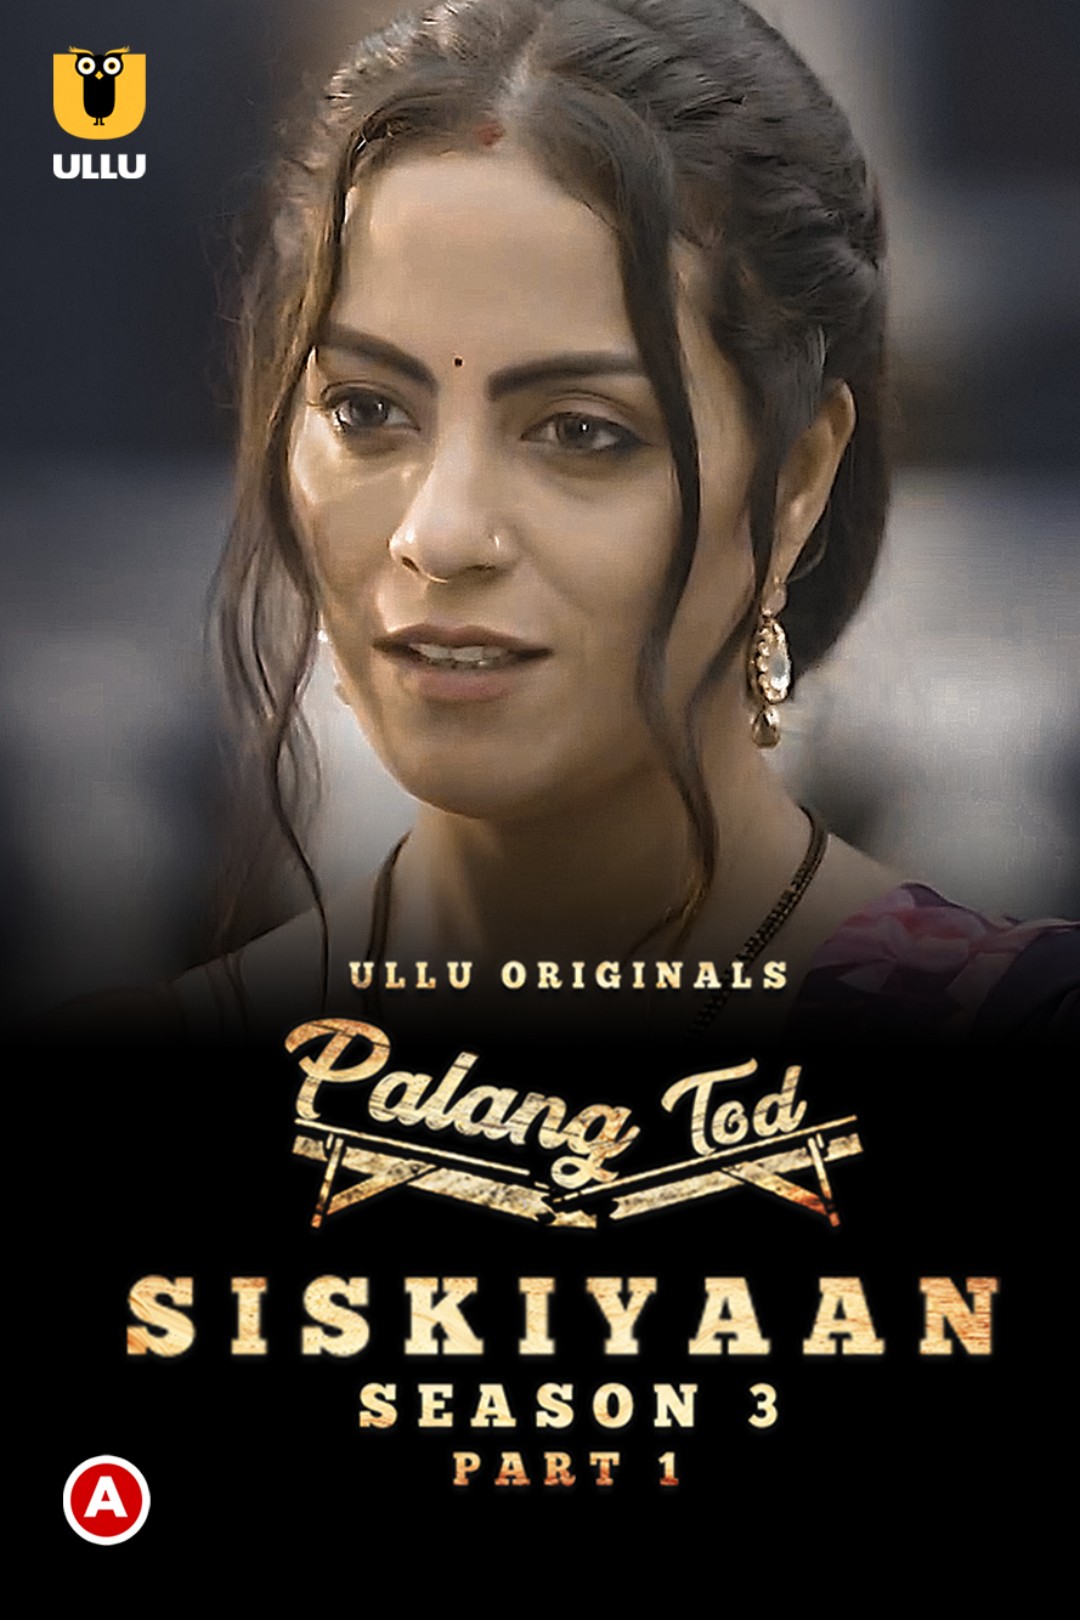 Download Palang Tod (Siskiyaan Season 3) Part 1 (2022) WEB DL Hindi ULLU 1080p [1.2GB] | 720p [550MB] | 480p [260MB] download